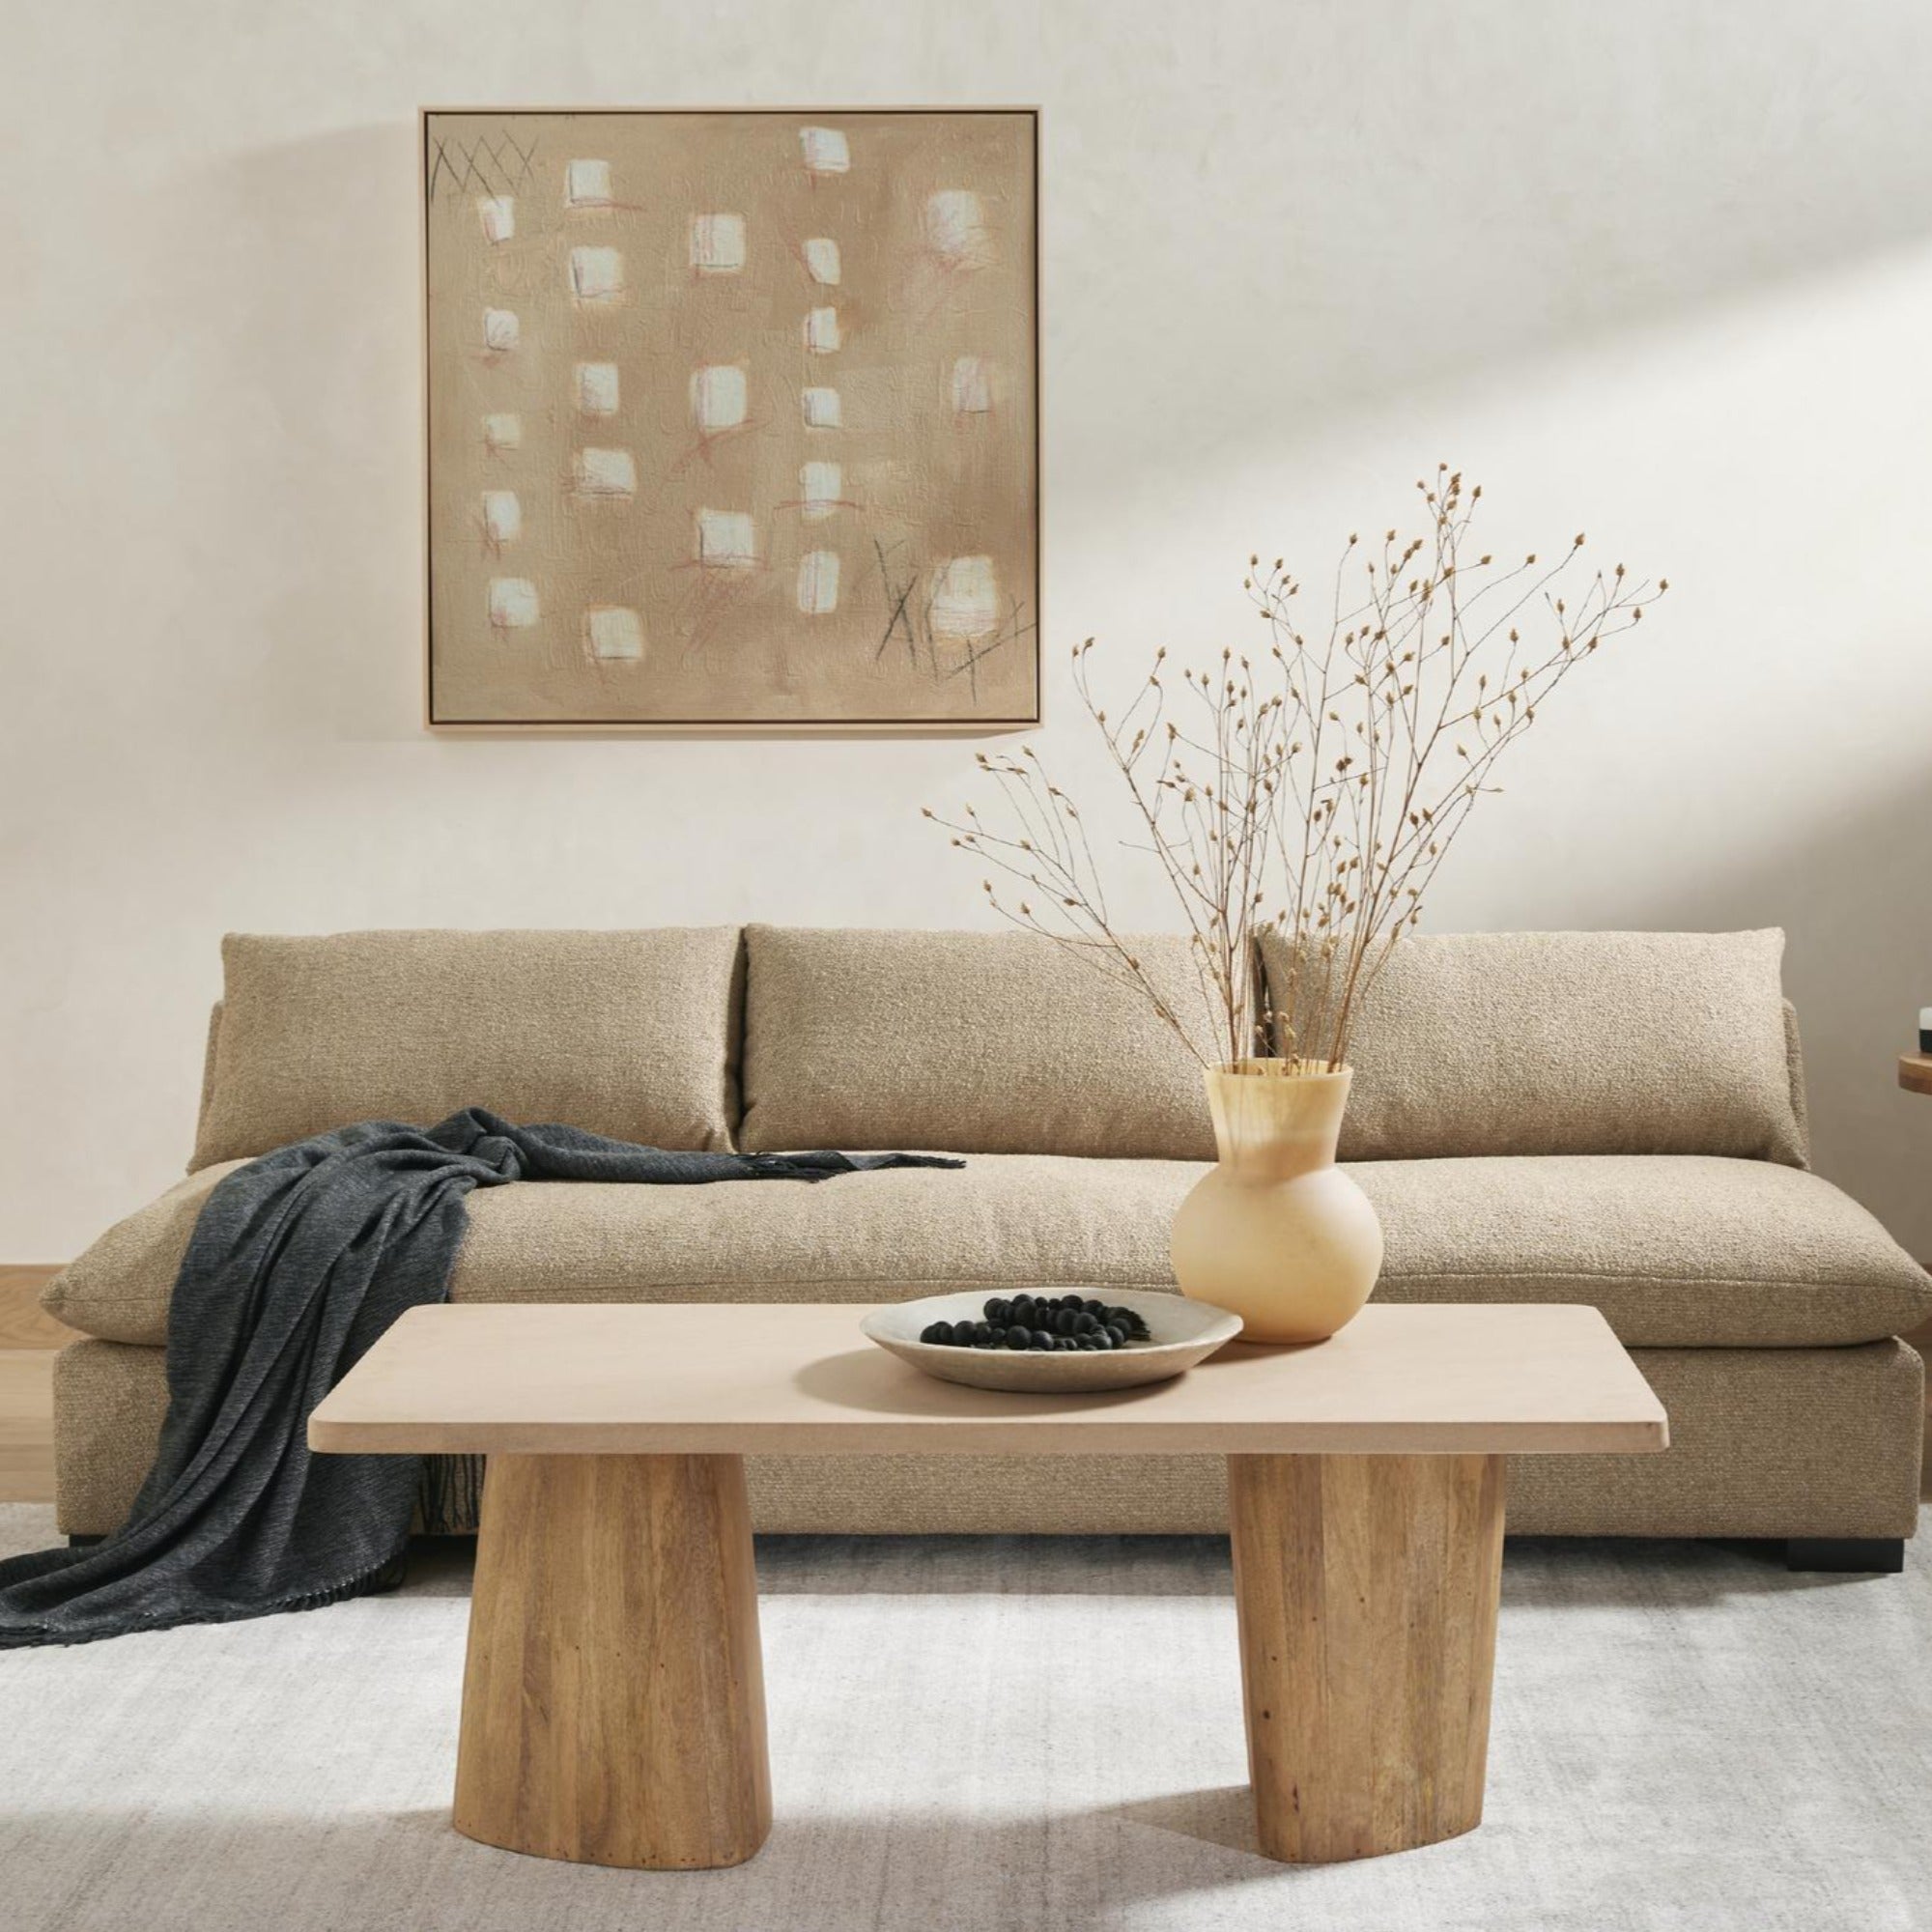 Grant Armless Sofa - StyleMeGHD - Modern Sofa